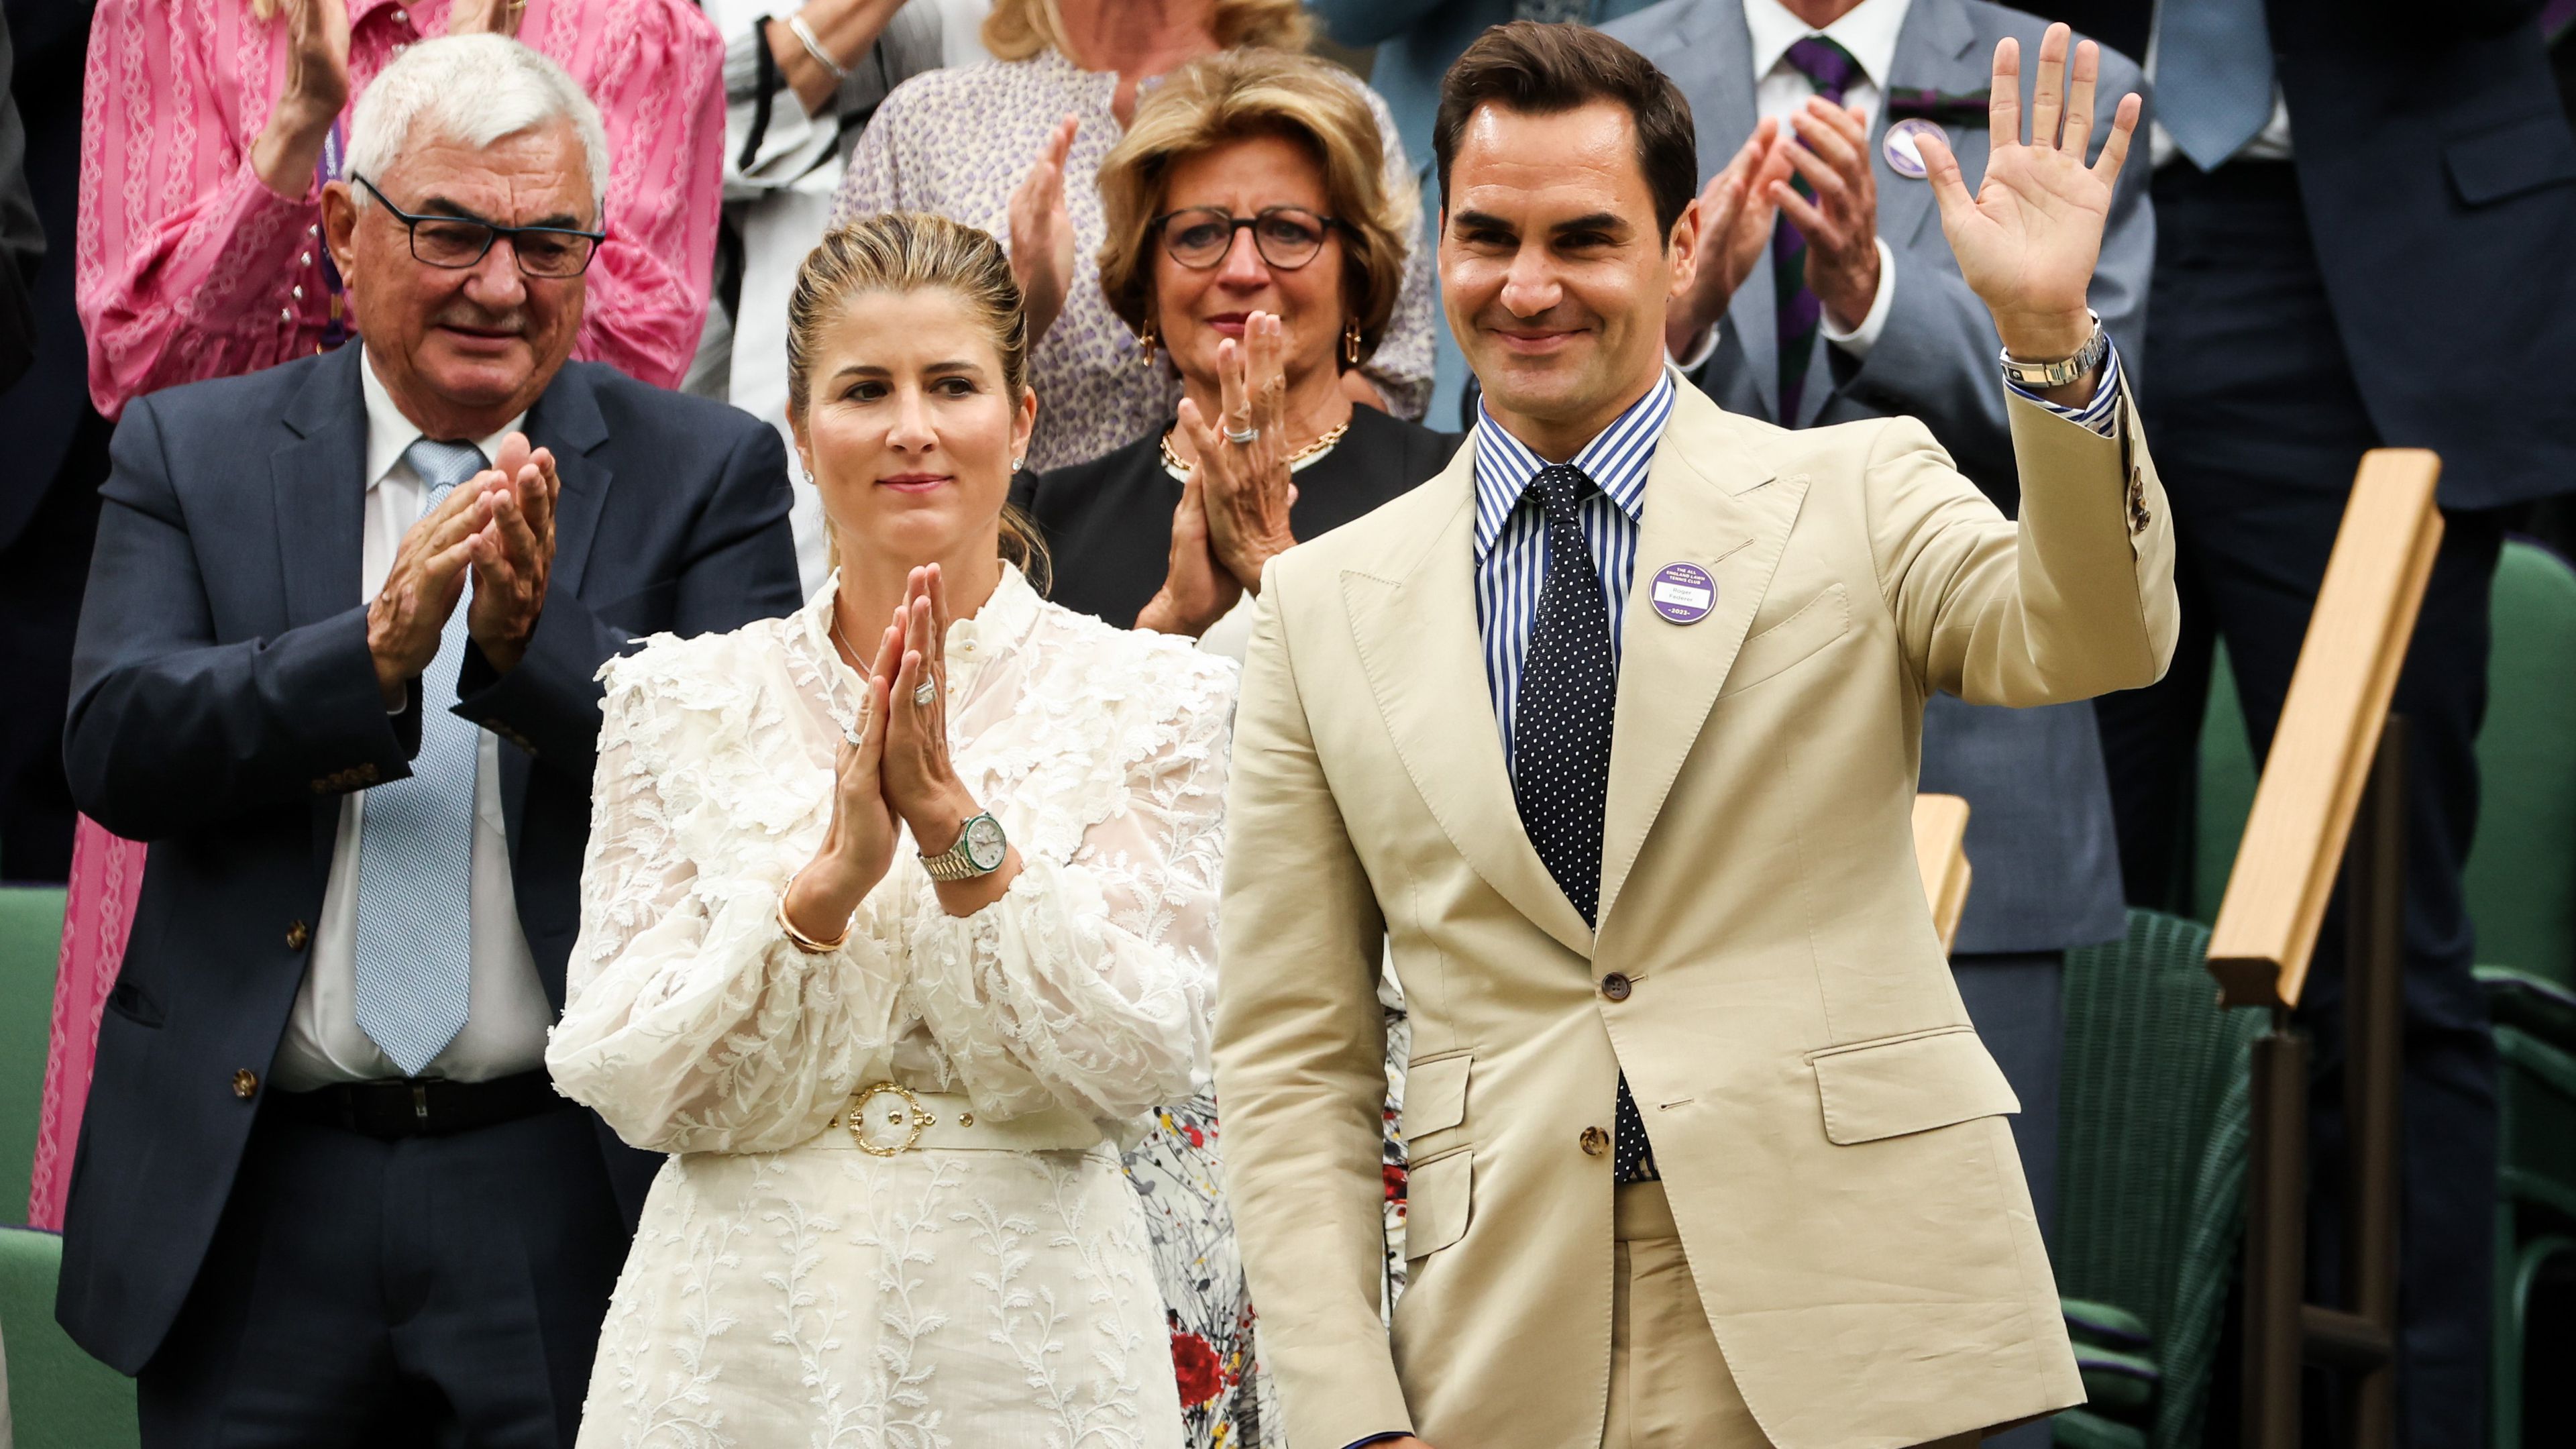 Tavaly Wimbledonba is elkísérte imádott felesége Federert (Fotó: Getty Images)